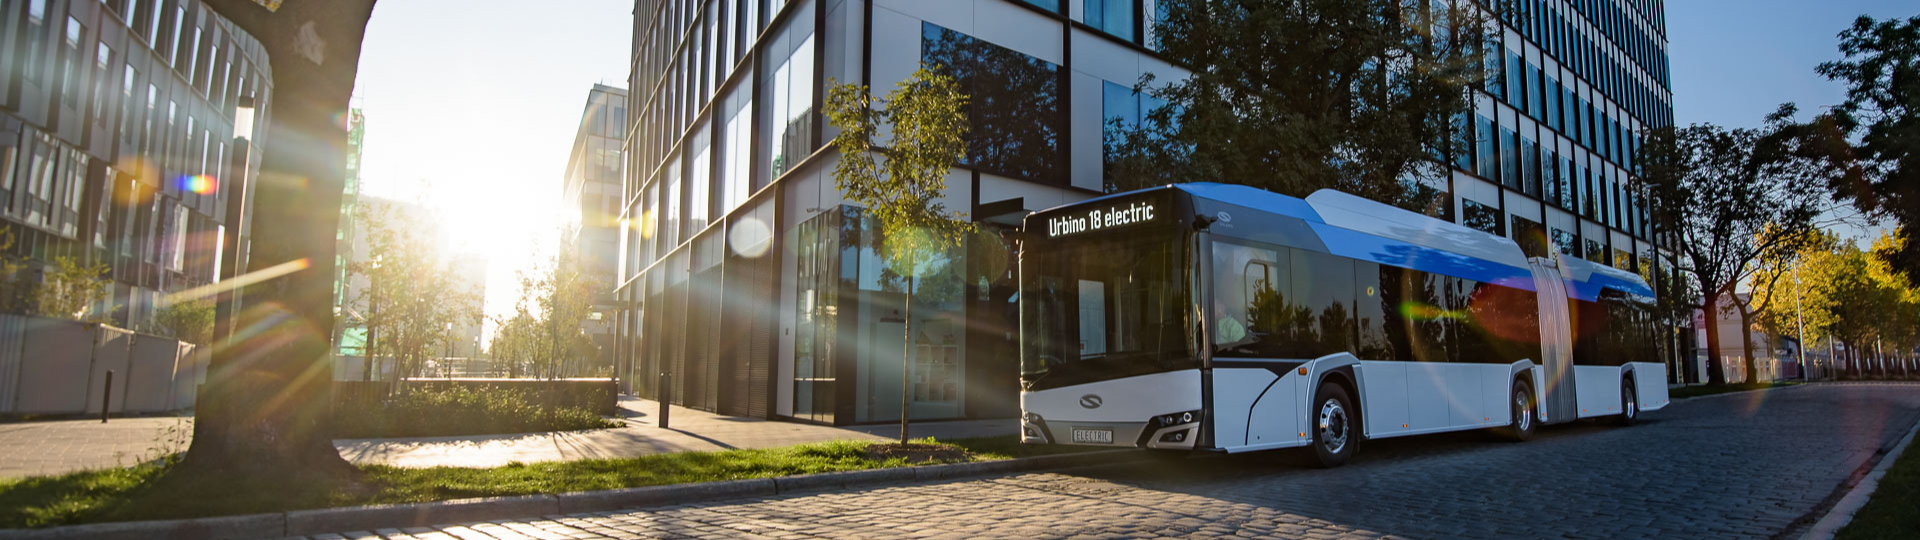 Aarhus orders 56 Solaris electric buses